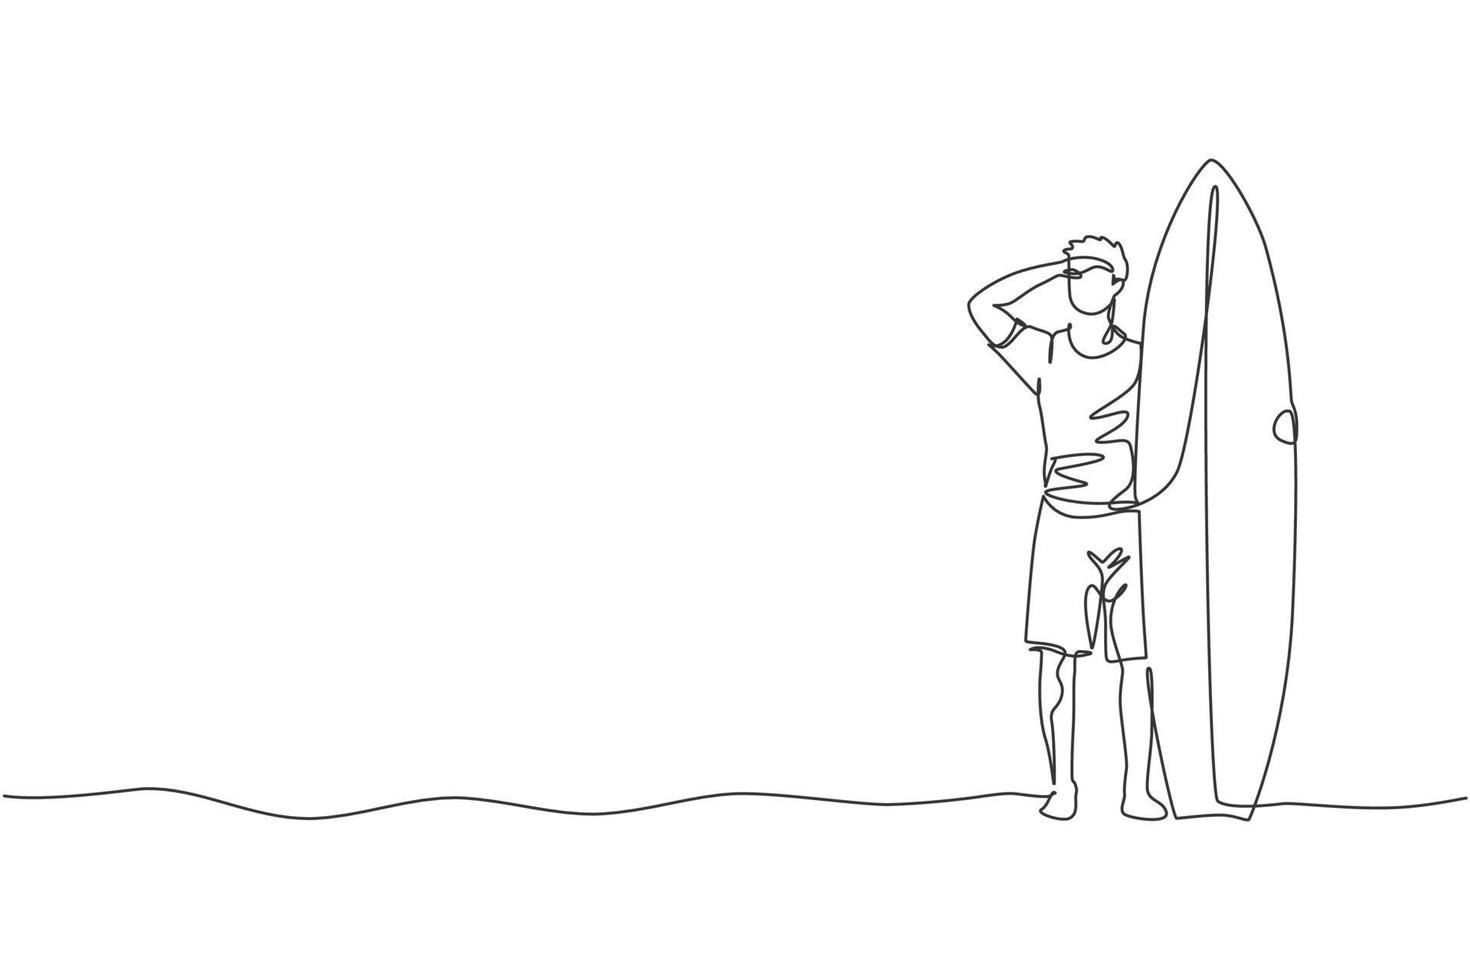 une ligne continue dessinant un jeune surfeur touristique heureux tenant une planche de surf sur une plage de sable. concept de sports nautiques extrêmes sains. vacances d'été. illustration vectorielle de dessin graphique à ligne unique dynamique vecteur